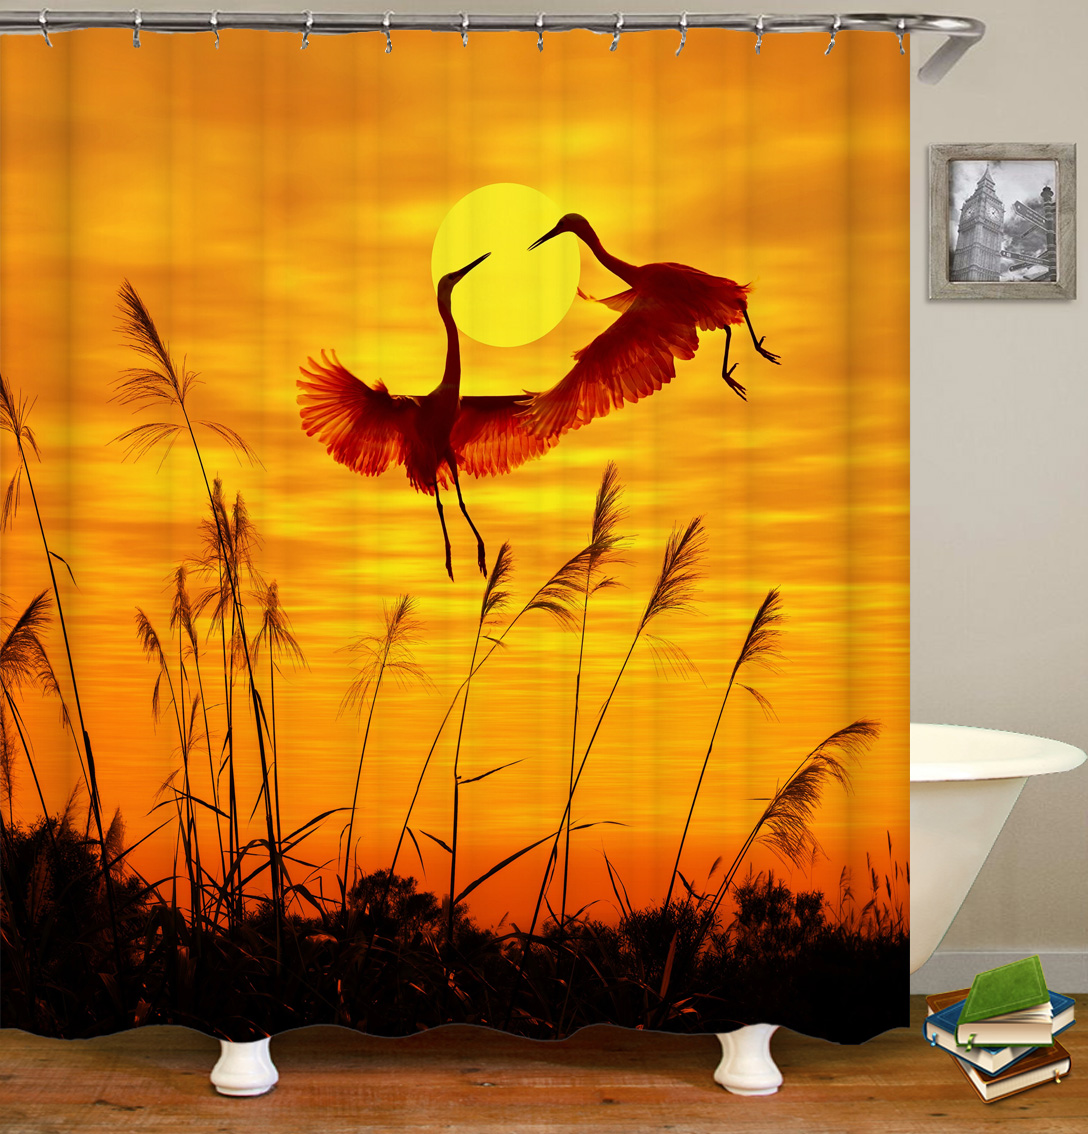 Sunlight Ocean Beach Fabric Shower Curtain Bathroom Curtains Sunset Dusk Sea Animal Dolphin Bath Screen with 12 Hooks